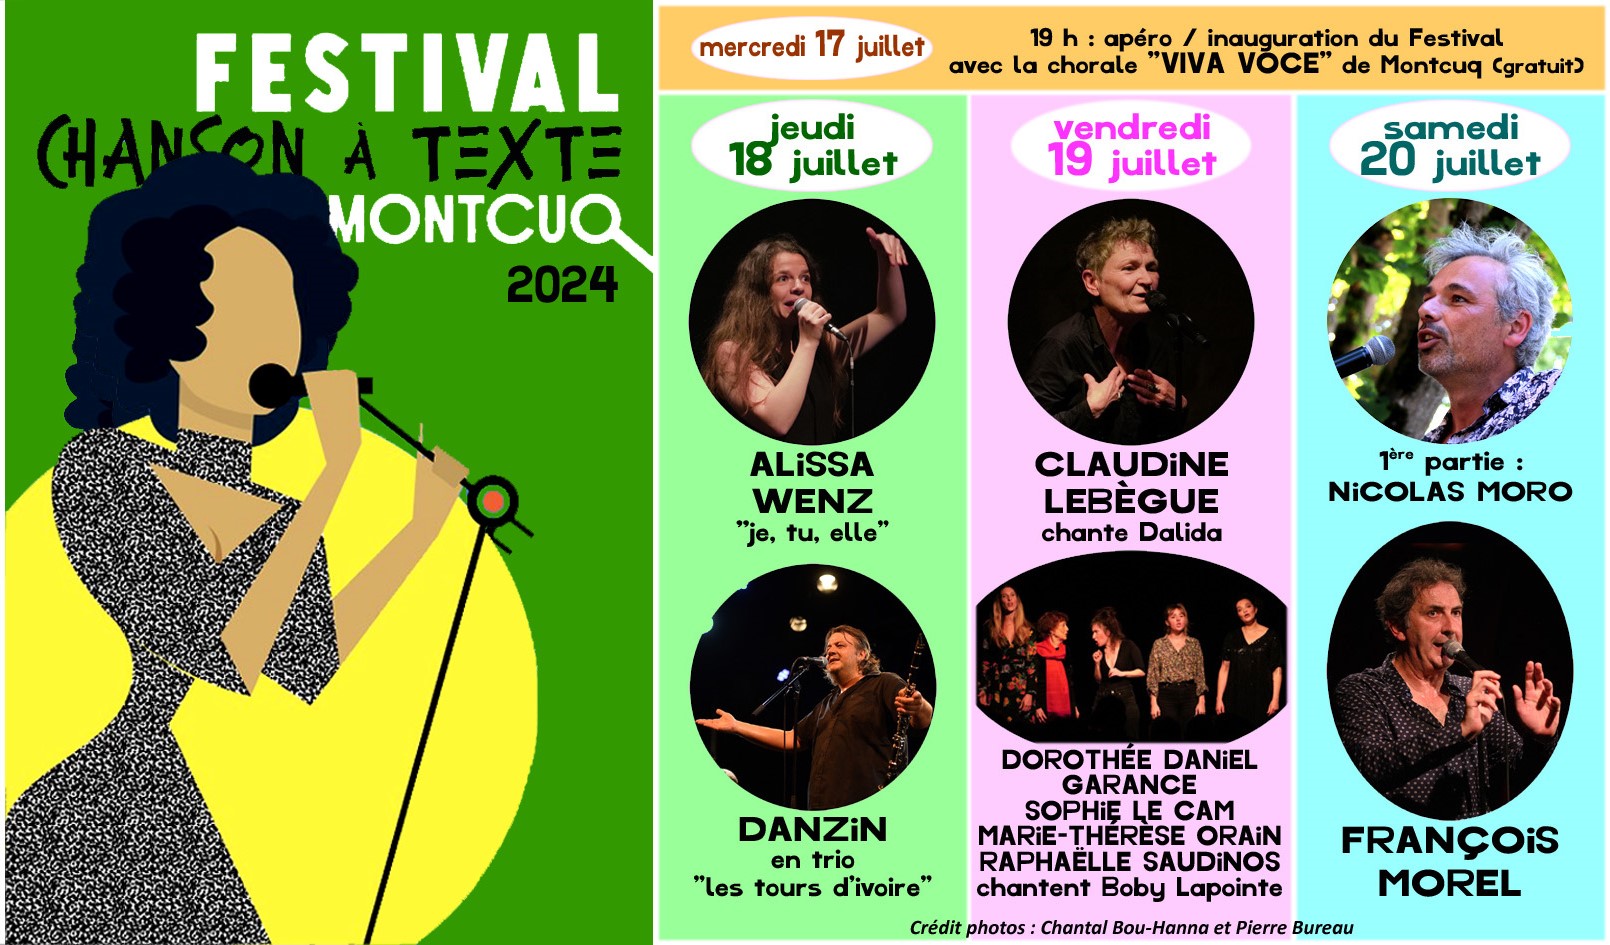 Festival de la Chanson à Texte de Montcuq : Soirée d'ouverture null France null null null null